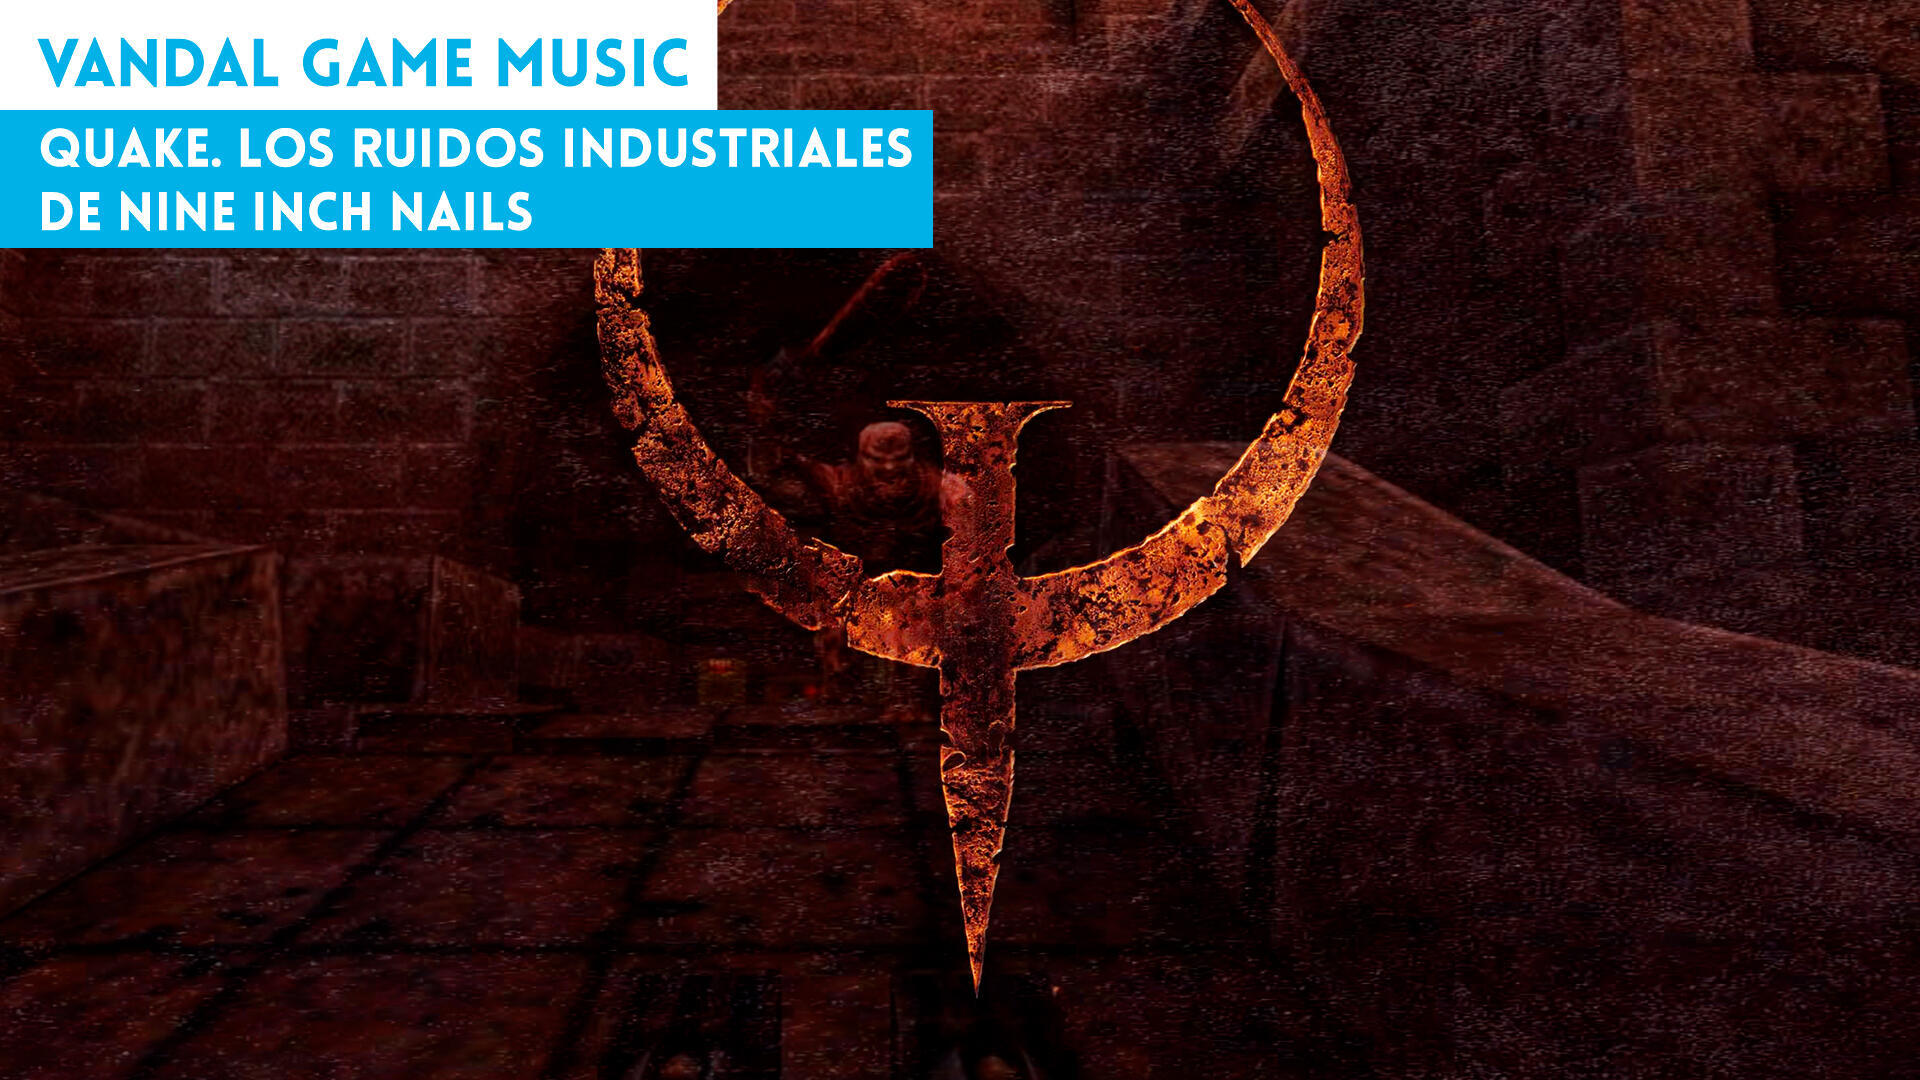 Quake. Los ruidos industriales de Nine Inch Nails